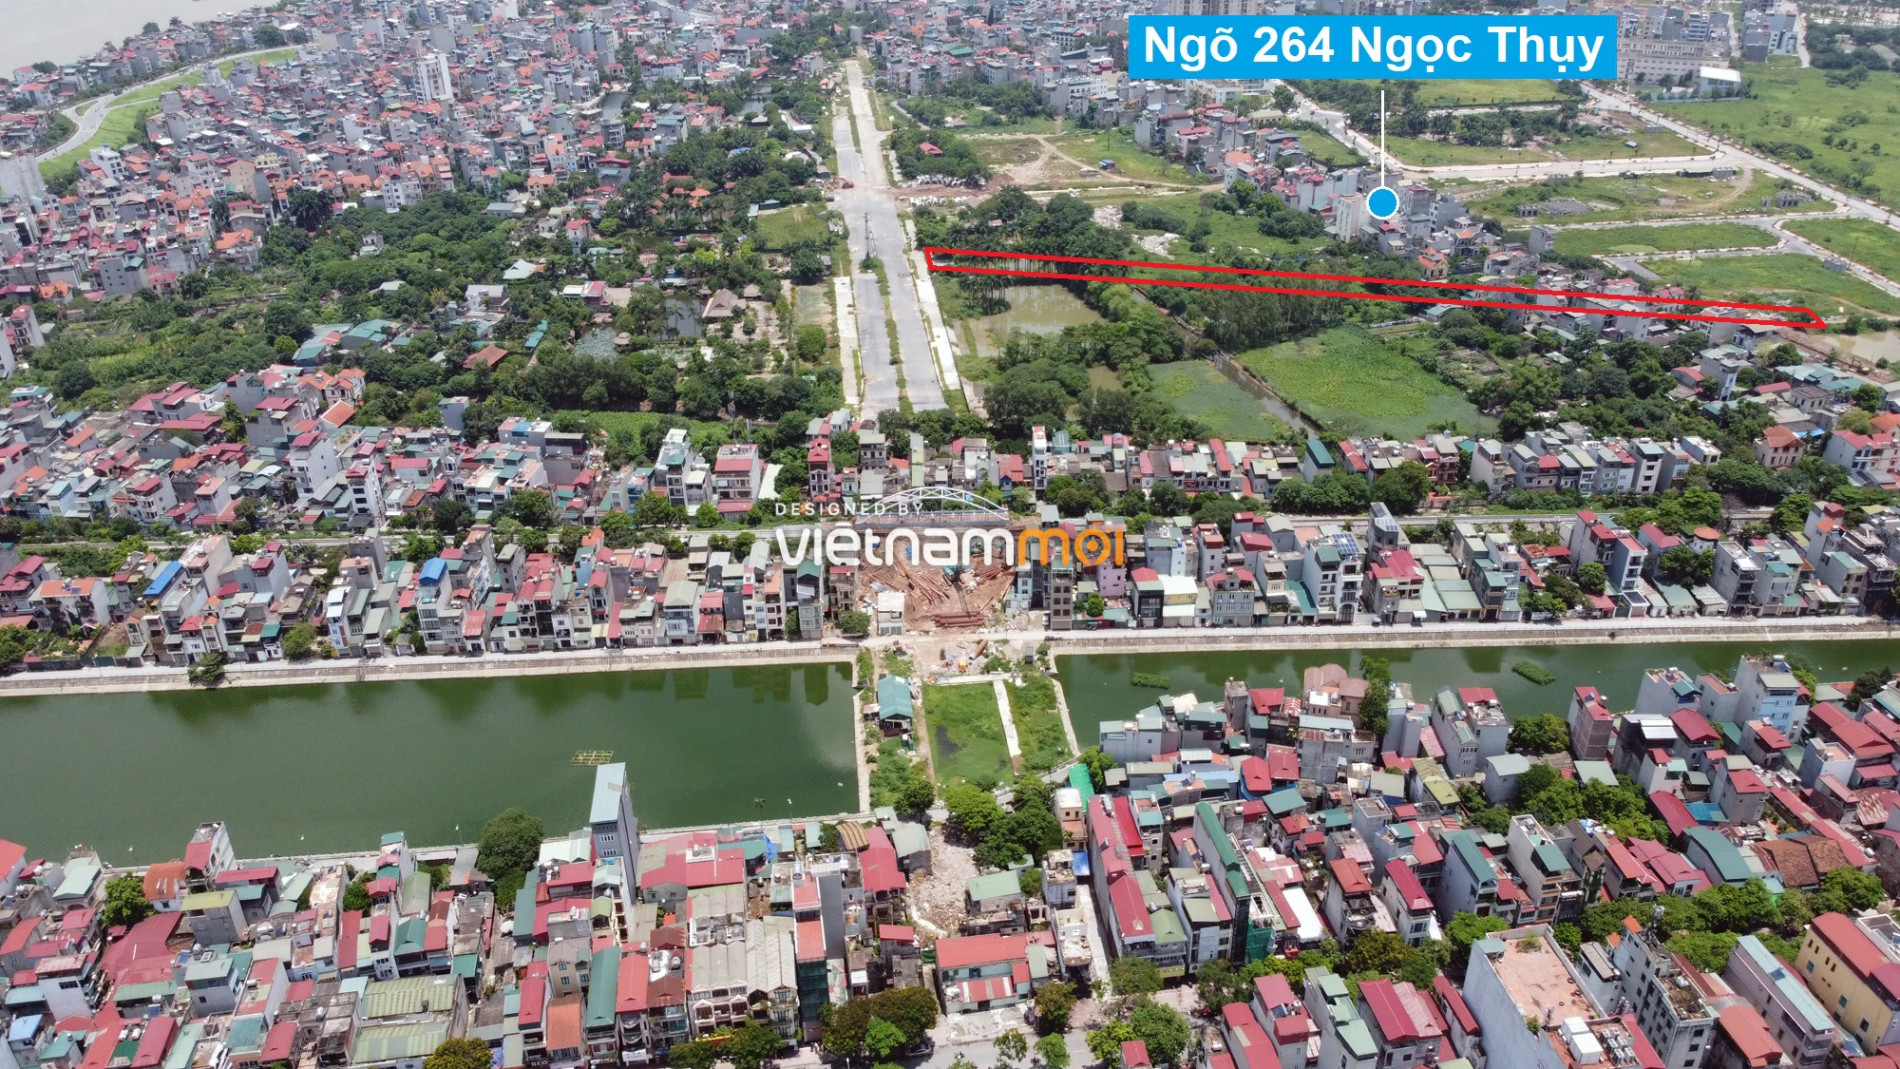 Những khu đất sắp thu hồi để mở đường ở phường Ngọc Thụy, Long Biên, Hà Nội (phần 6) - Ảnh 7.